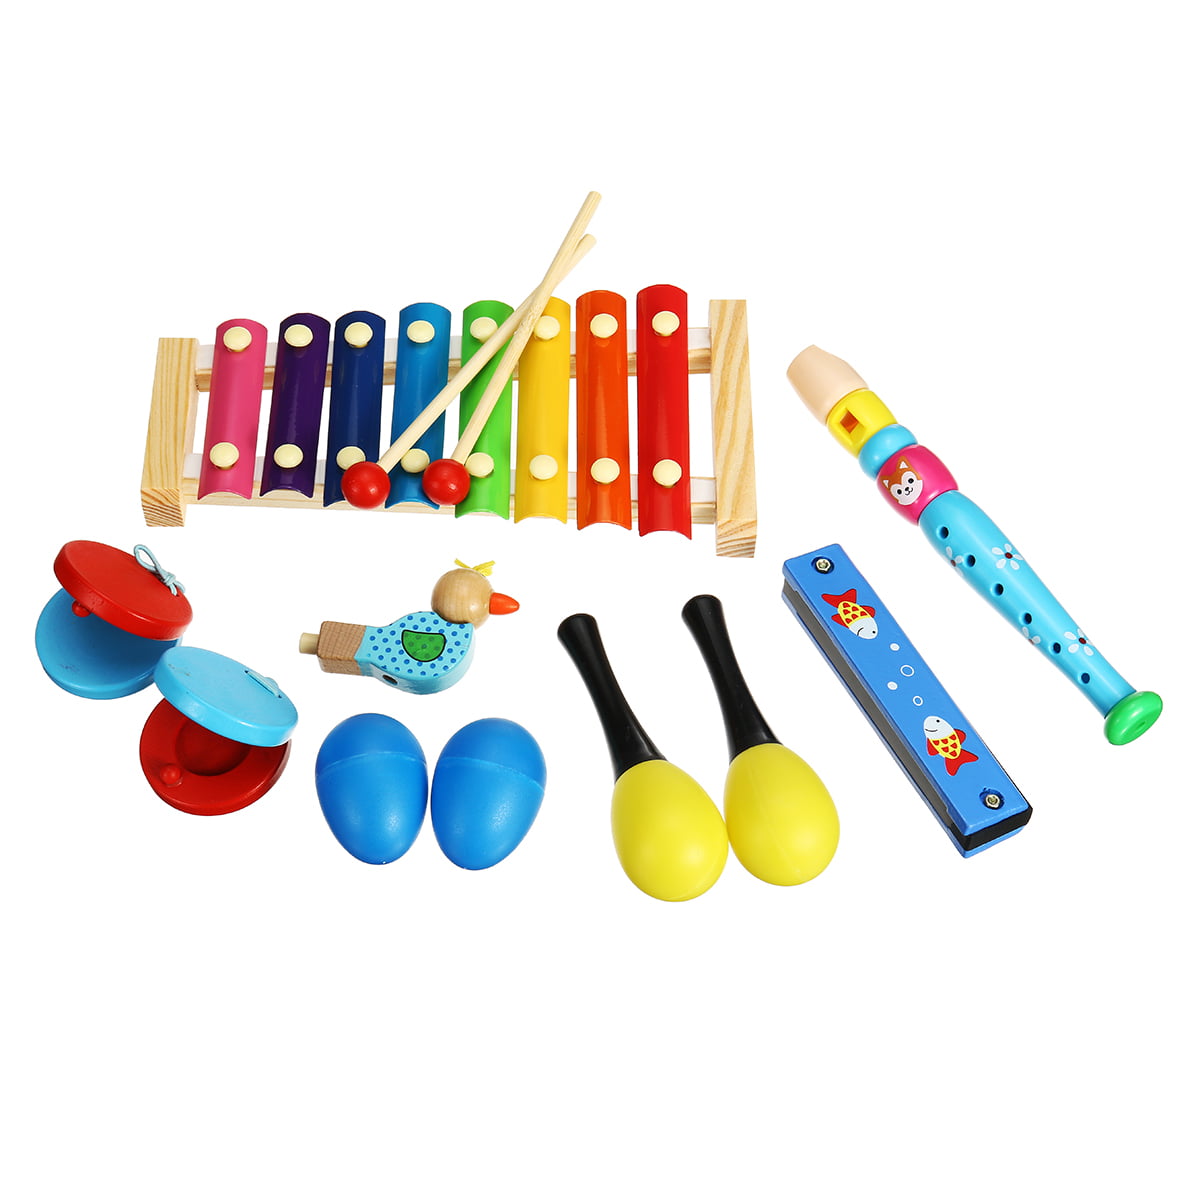 children's instruments